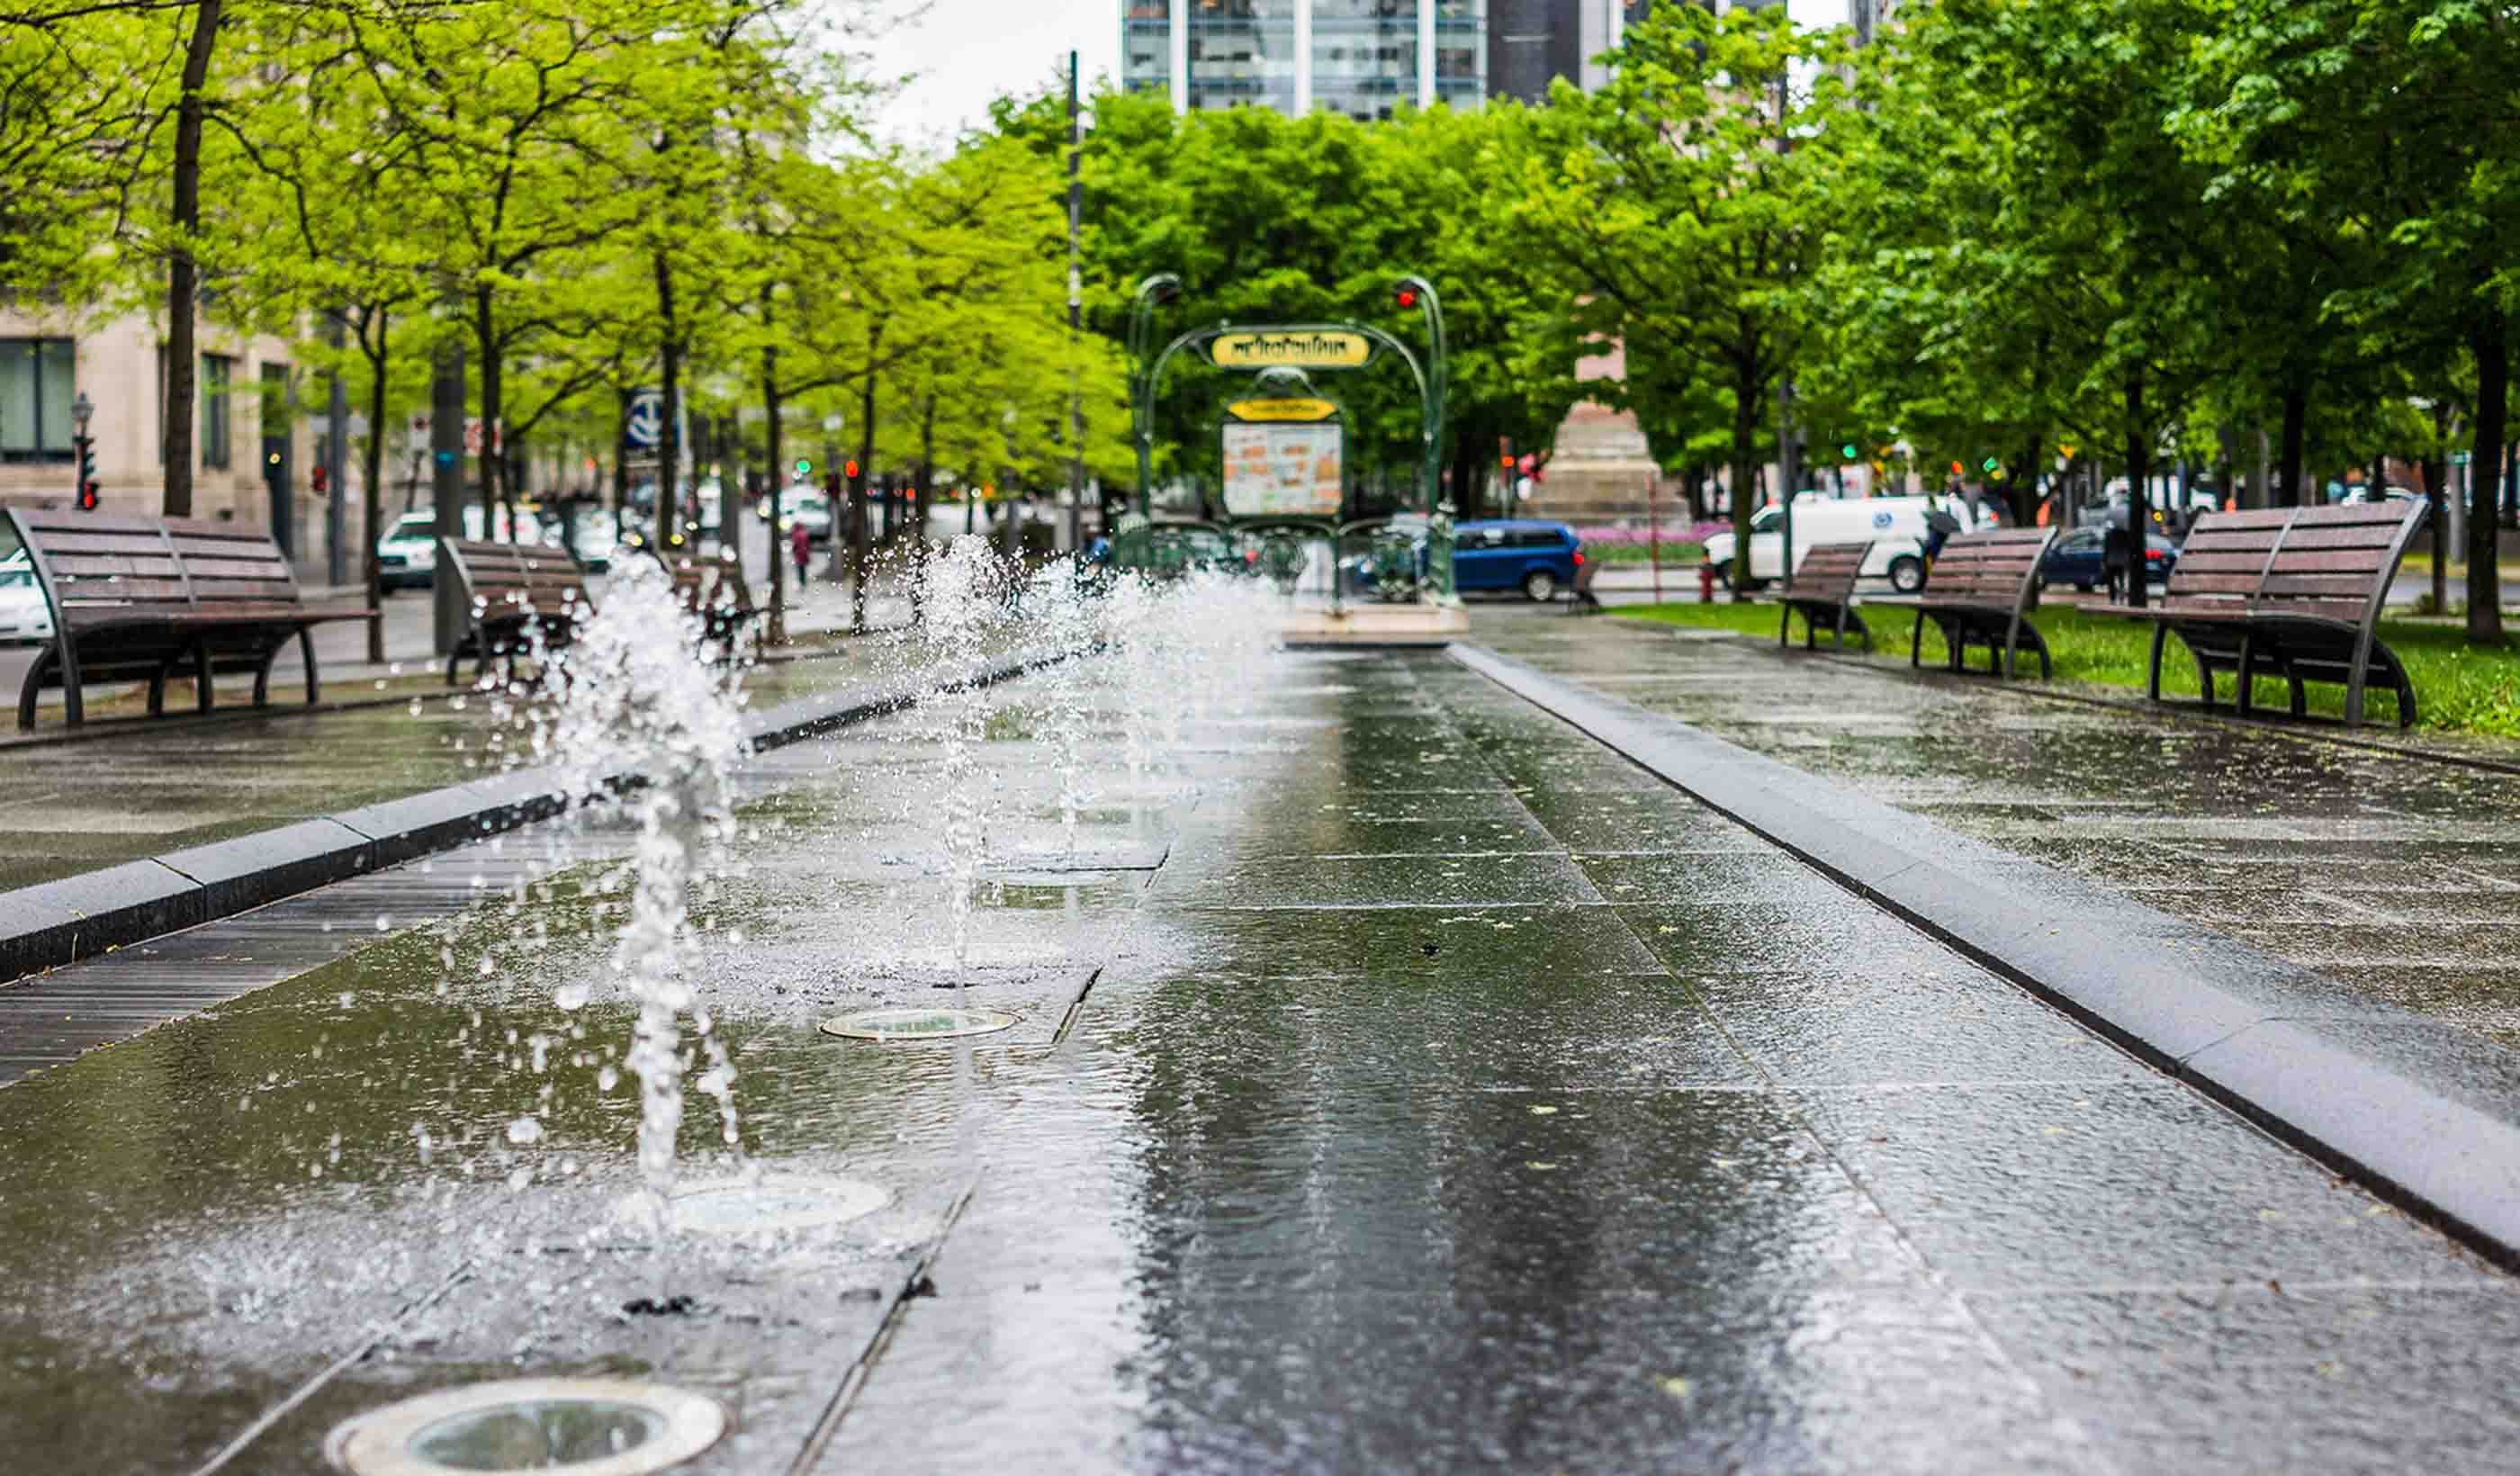 Enhancing Montreal’s public spaces through strategic urban design